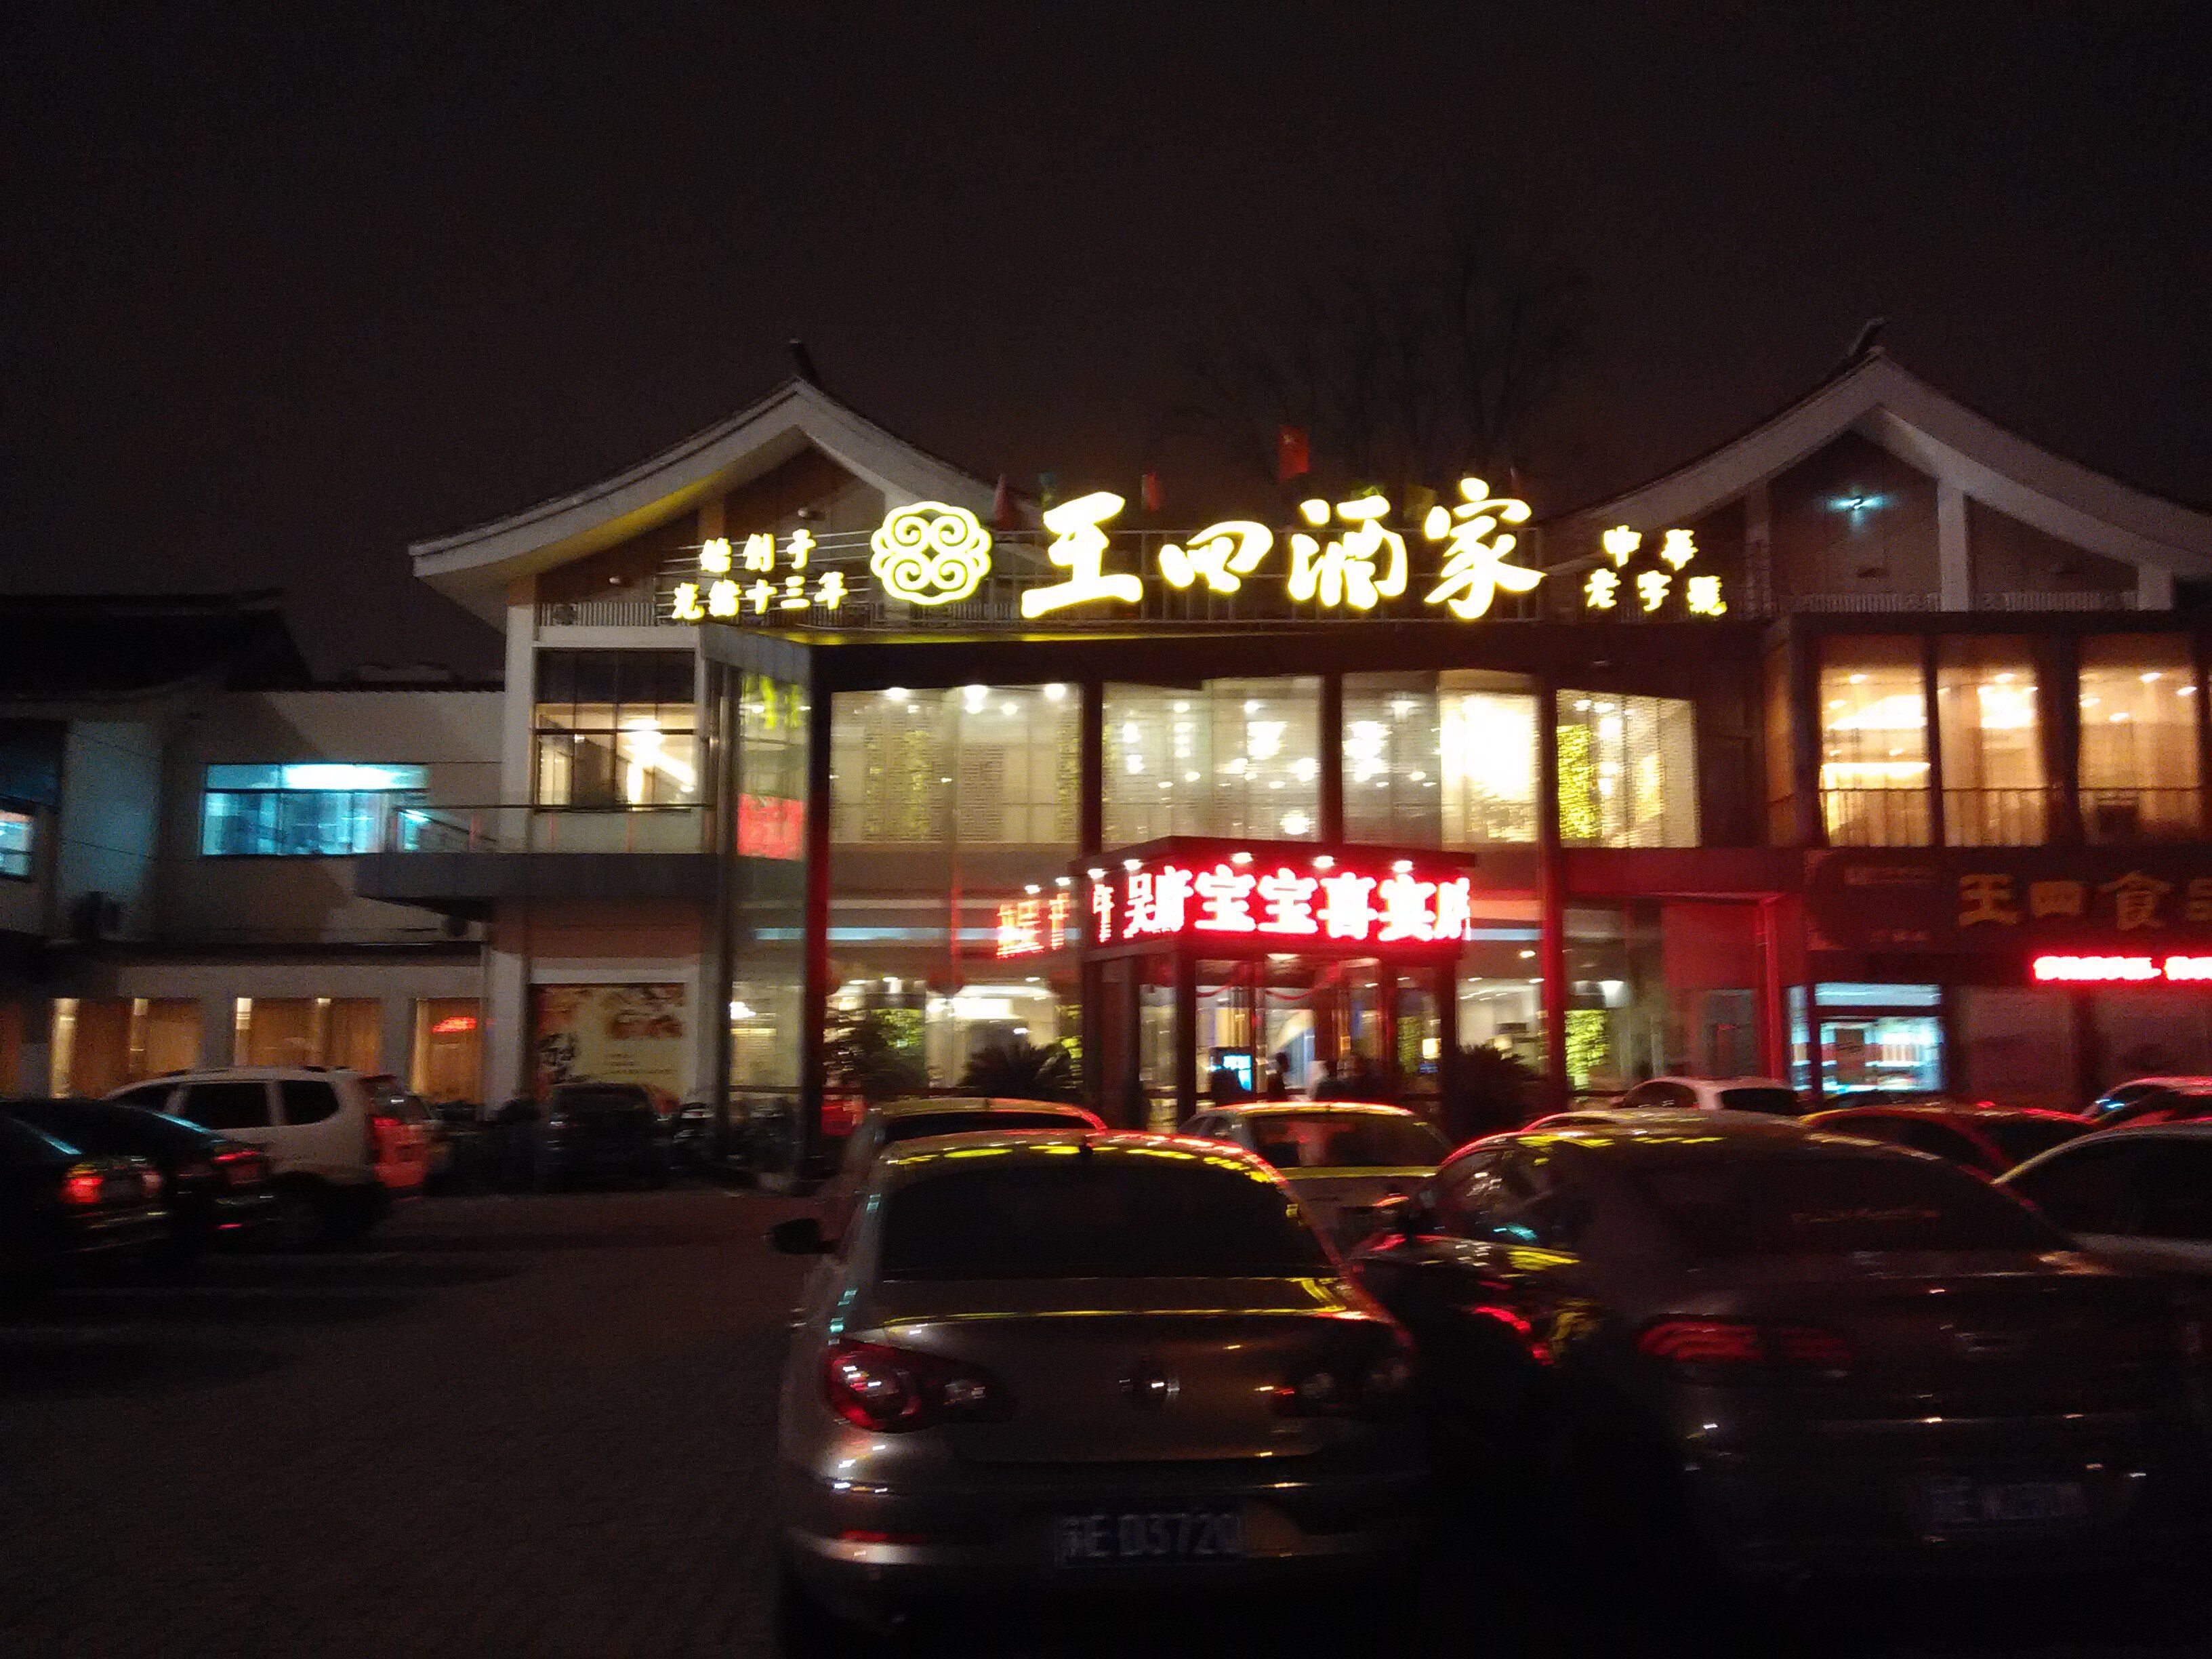 2022王四酒家(兴福街店)美食餐厅,应该算是常熟最好的菜馆了